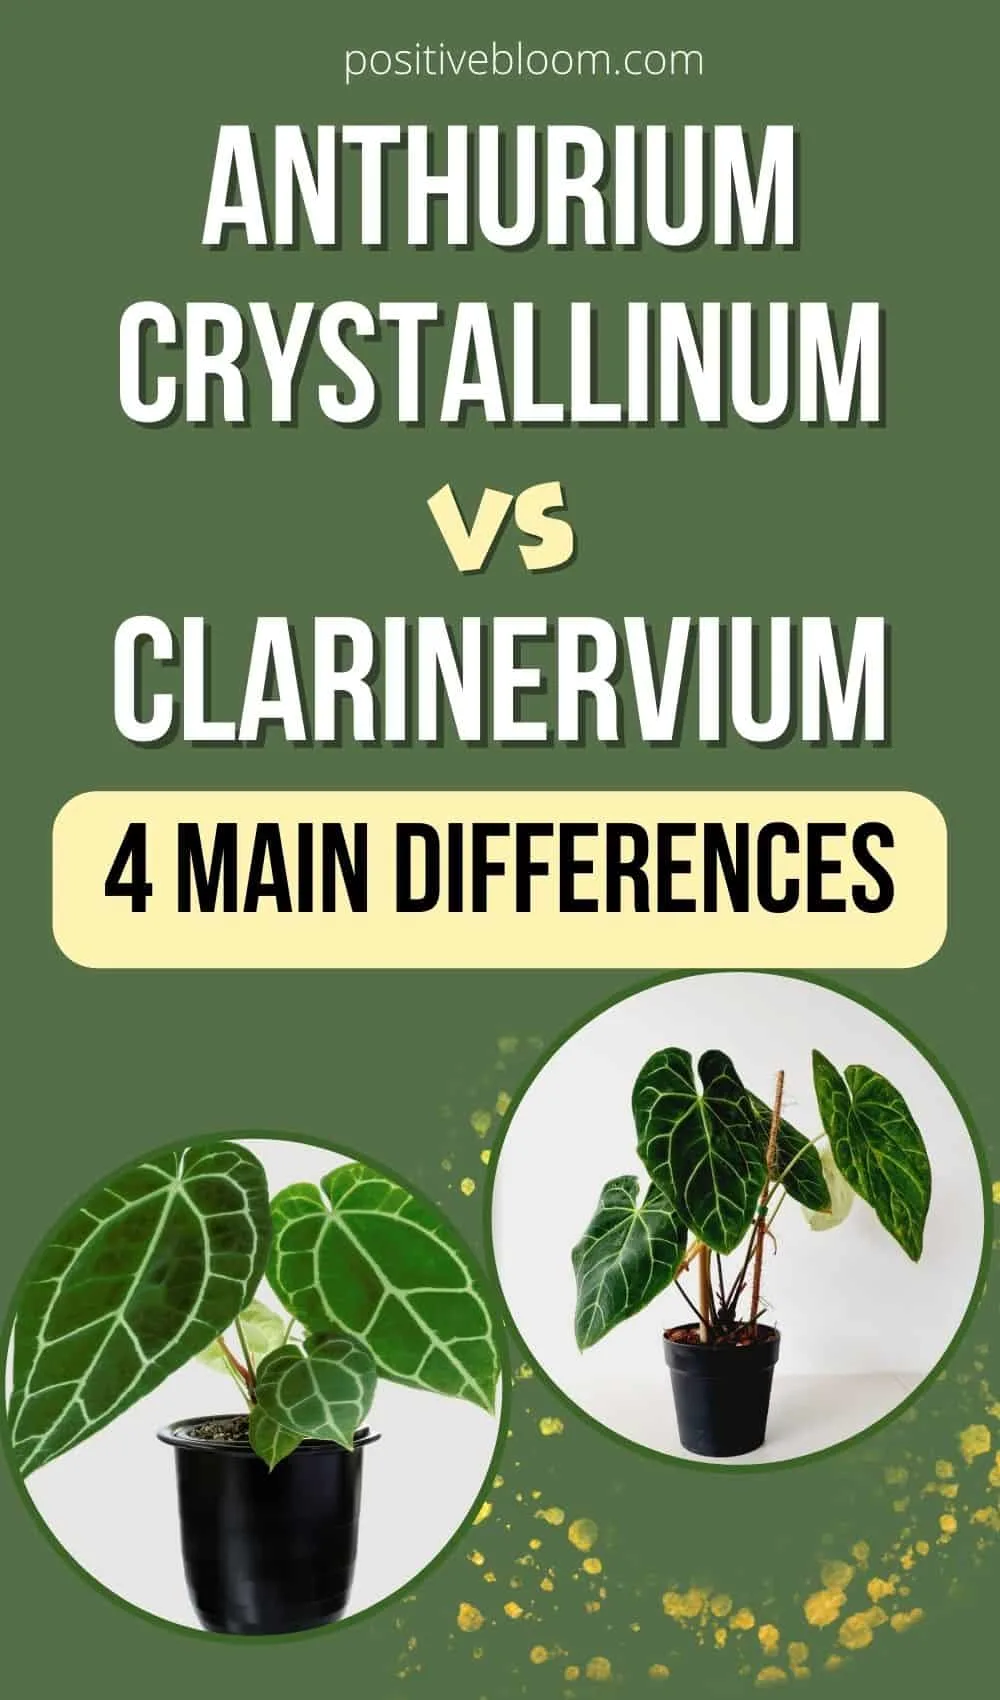 Anthurium Crystallinum vs Clarinervium- 4 Main Differences